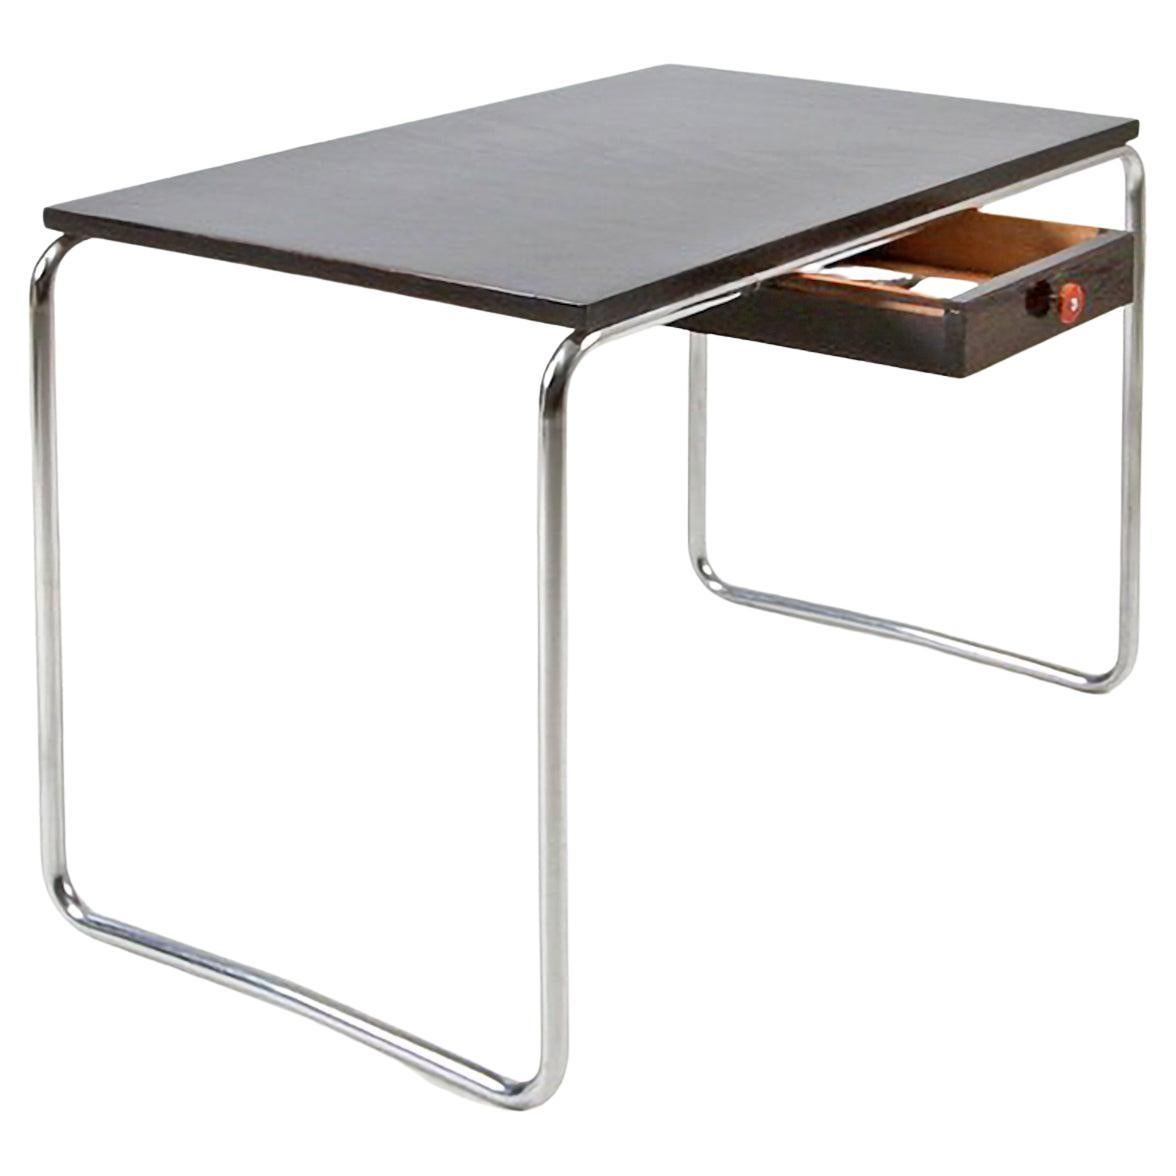 Table moderniste sur mesure en acier tubulaire en métal chromé et bois laqué brillant en vente